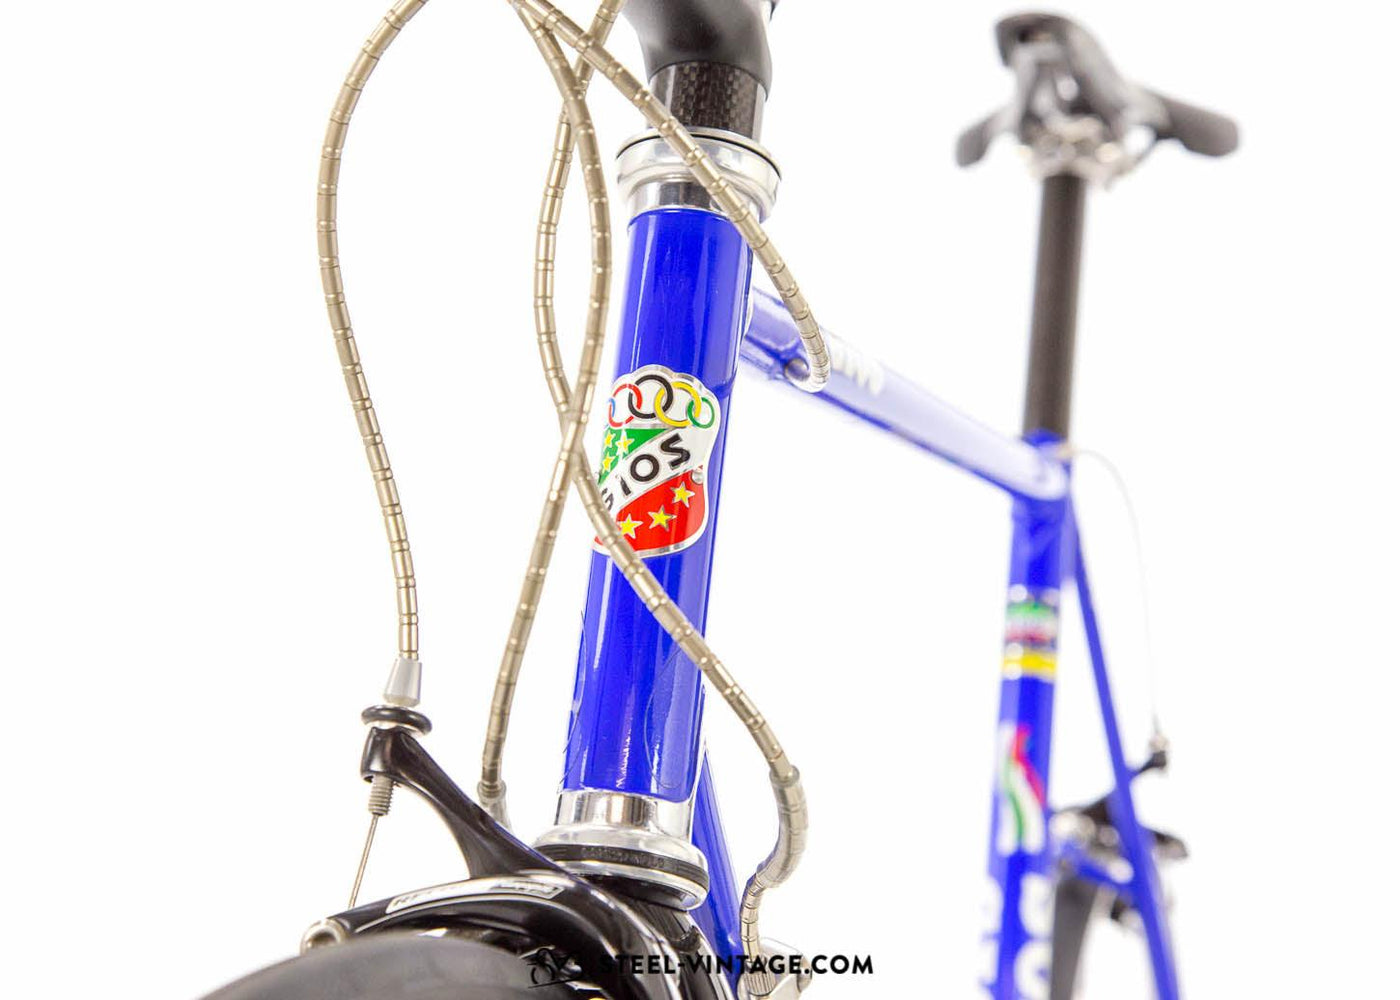 Gios Compact Pro Steel Road Bicycle - Steel Vintage Bikes